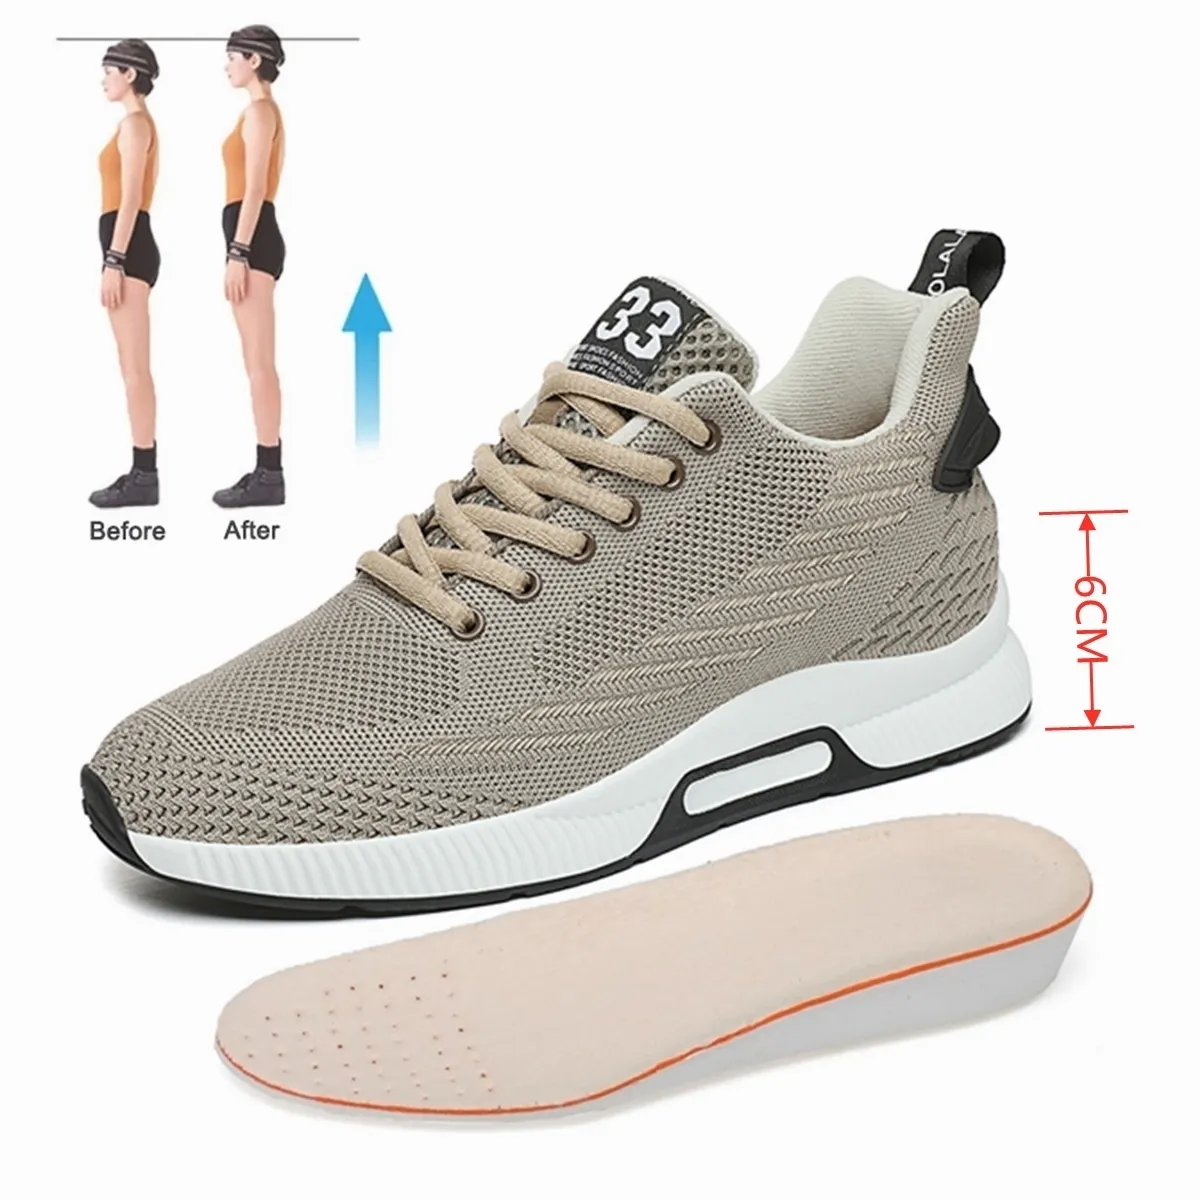 أحذية زيادة الارتفاع YEINSHAARS أحذية رياضية للرجال مصممة لزيادة النعال 6 سنتيمتر حذاء حياة يومية للرجال 221027